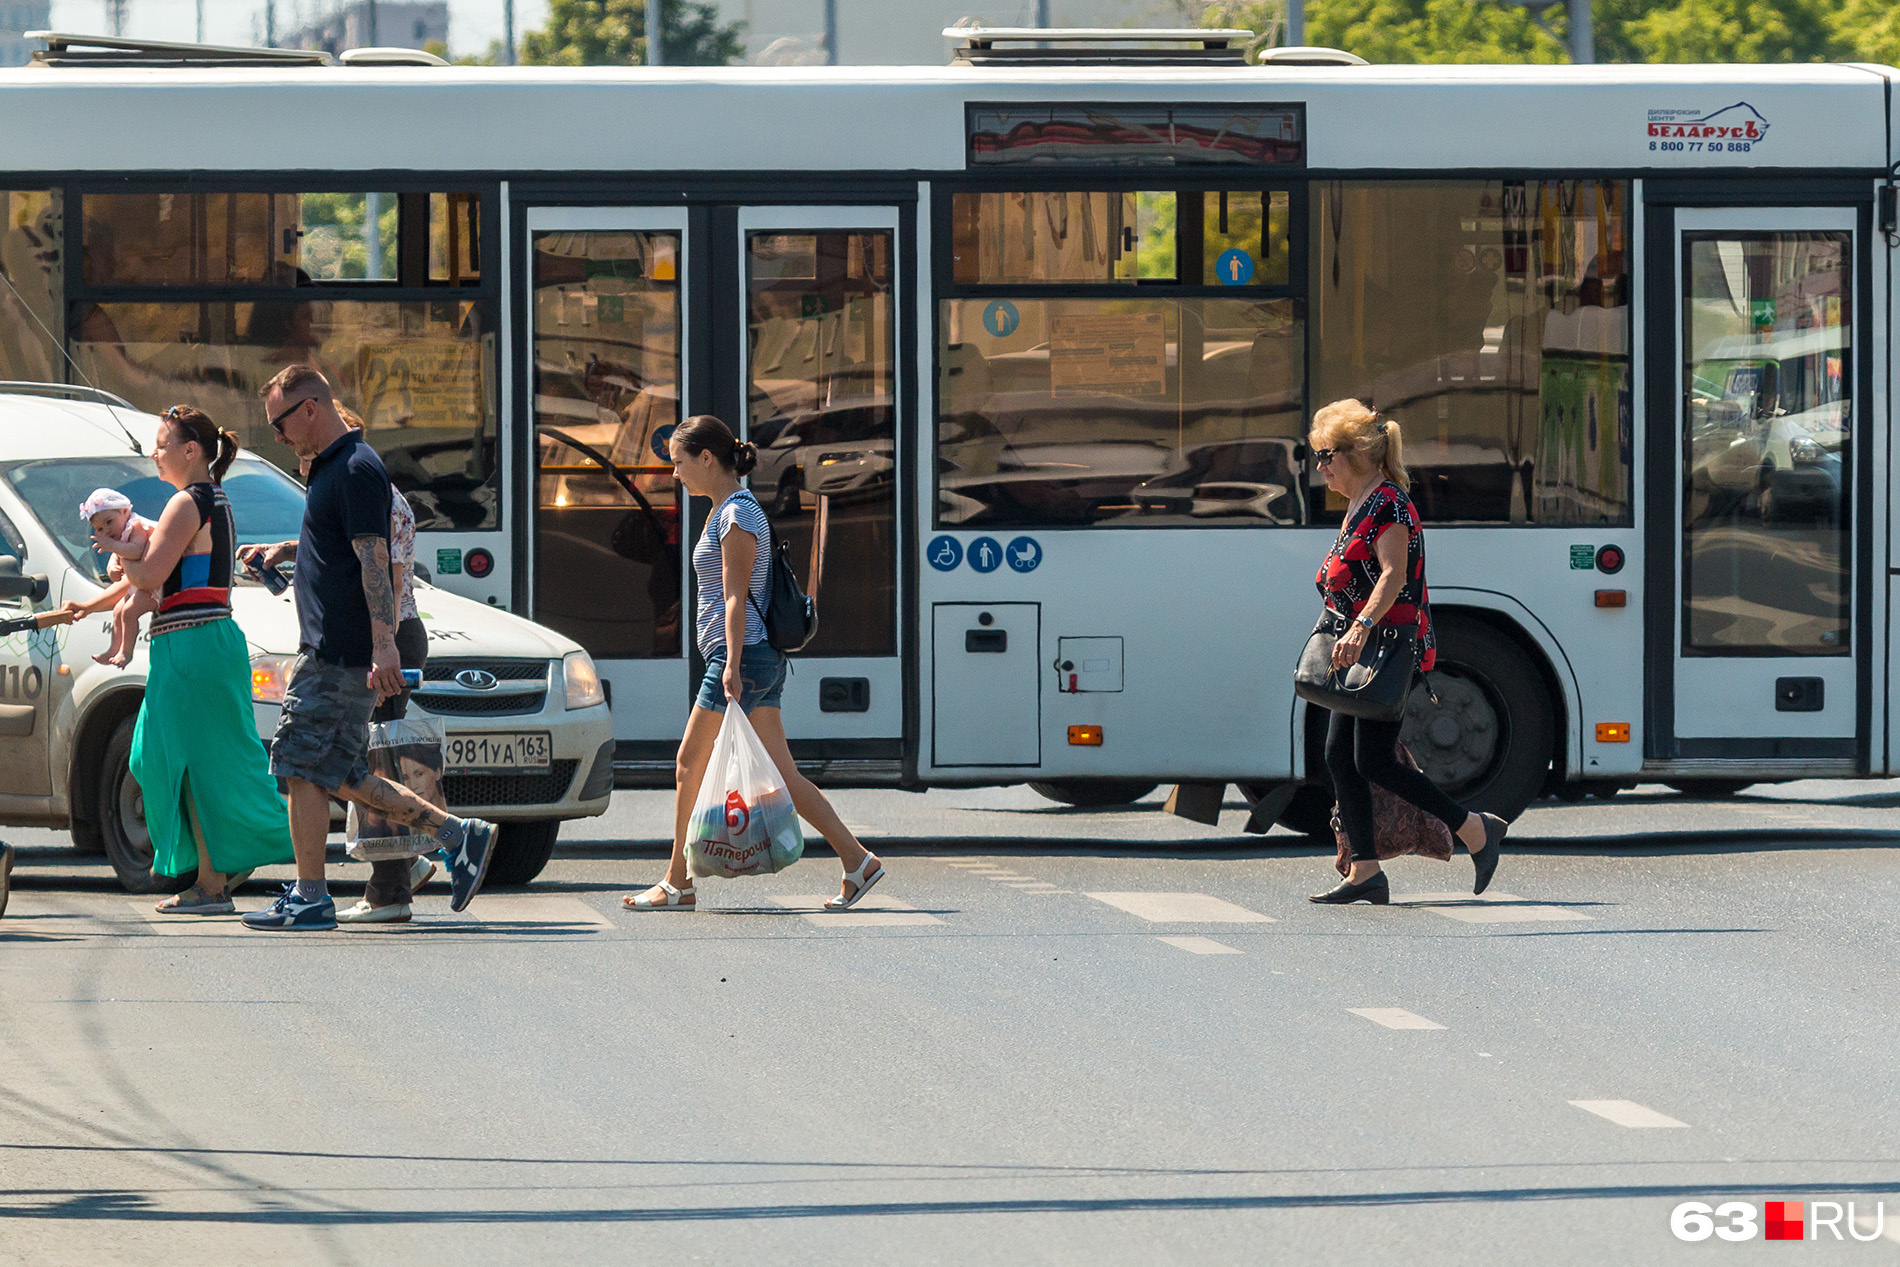 Коммерческие перевозчики считают, что самарцы предпочитают муниципальный транспорт